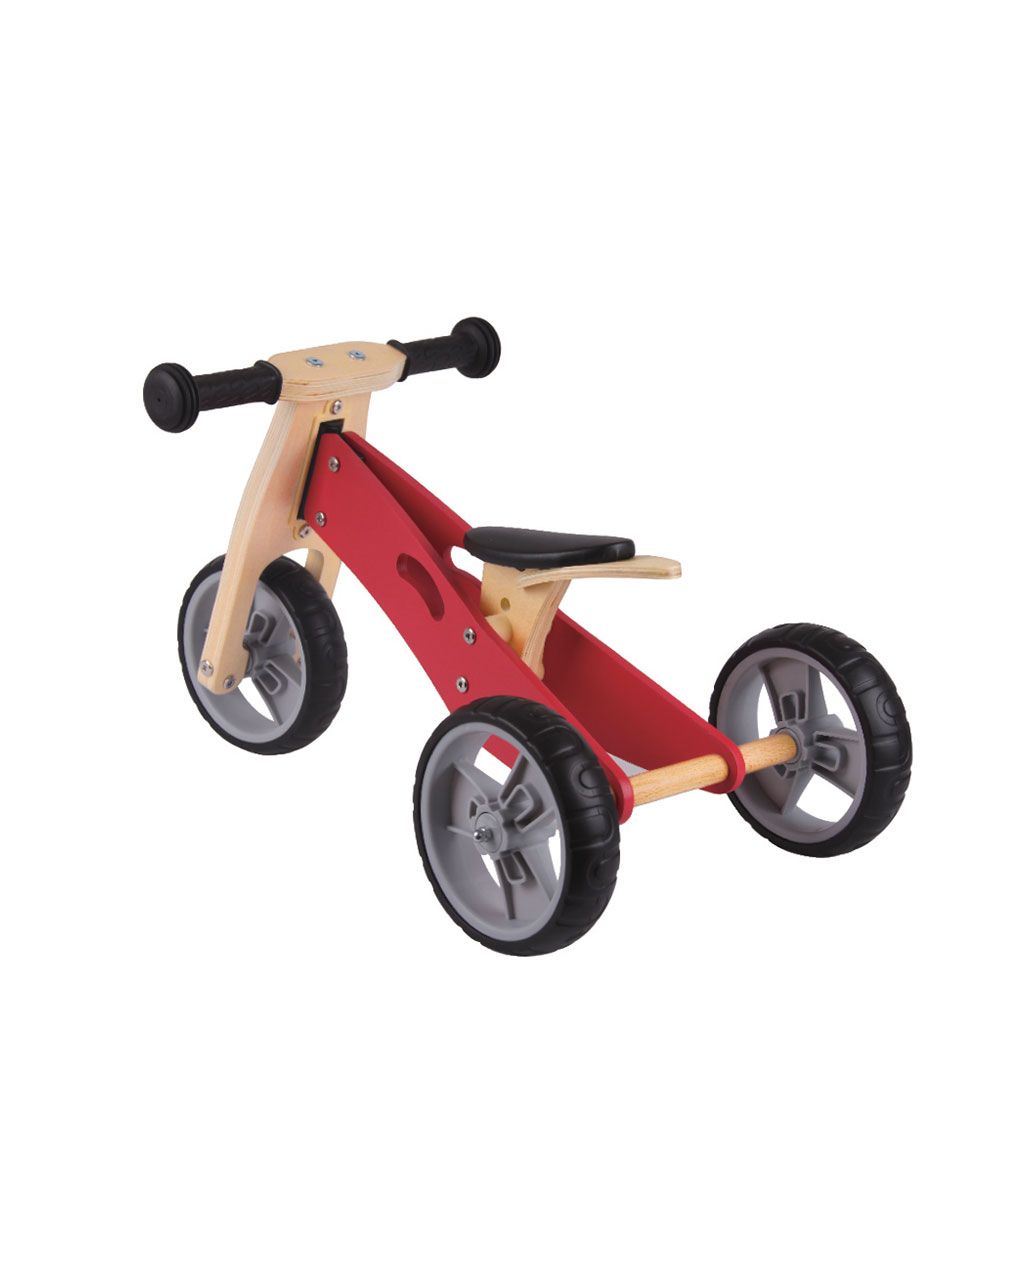 Minibike 2 em 1 vermelho - brinquedos proludis - Pro